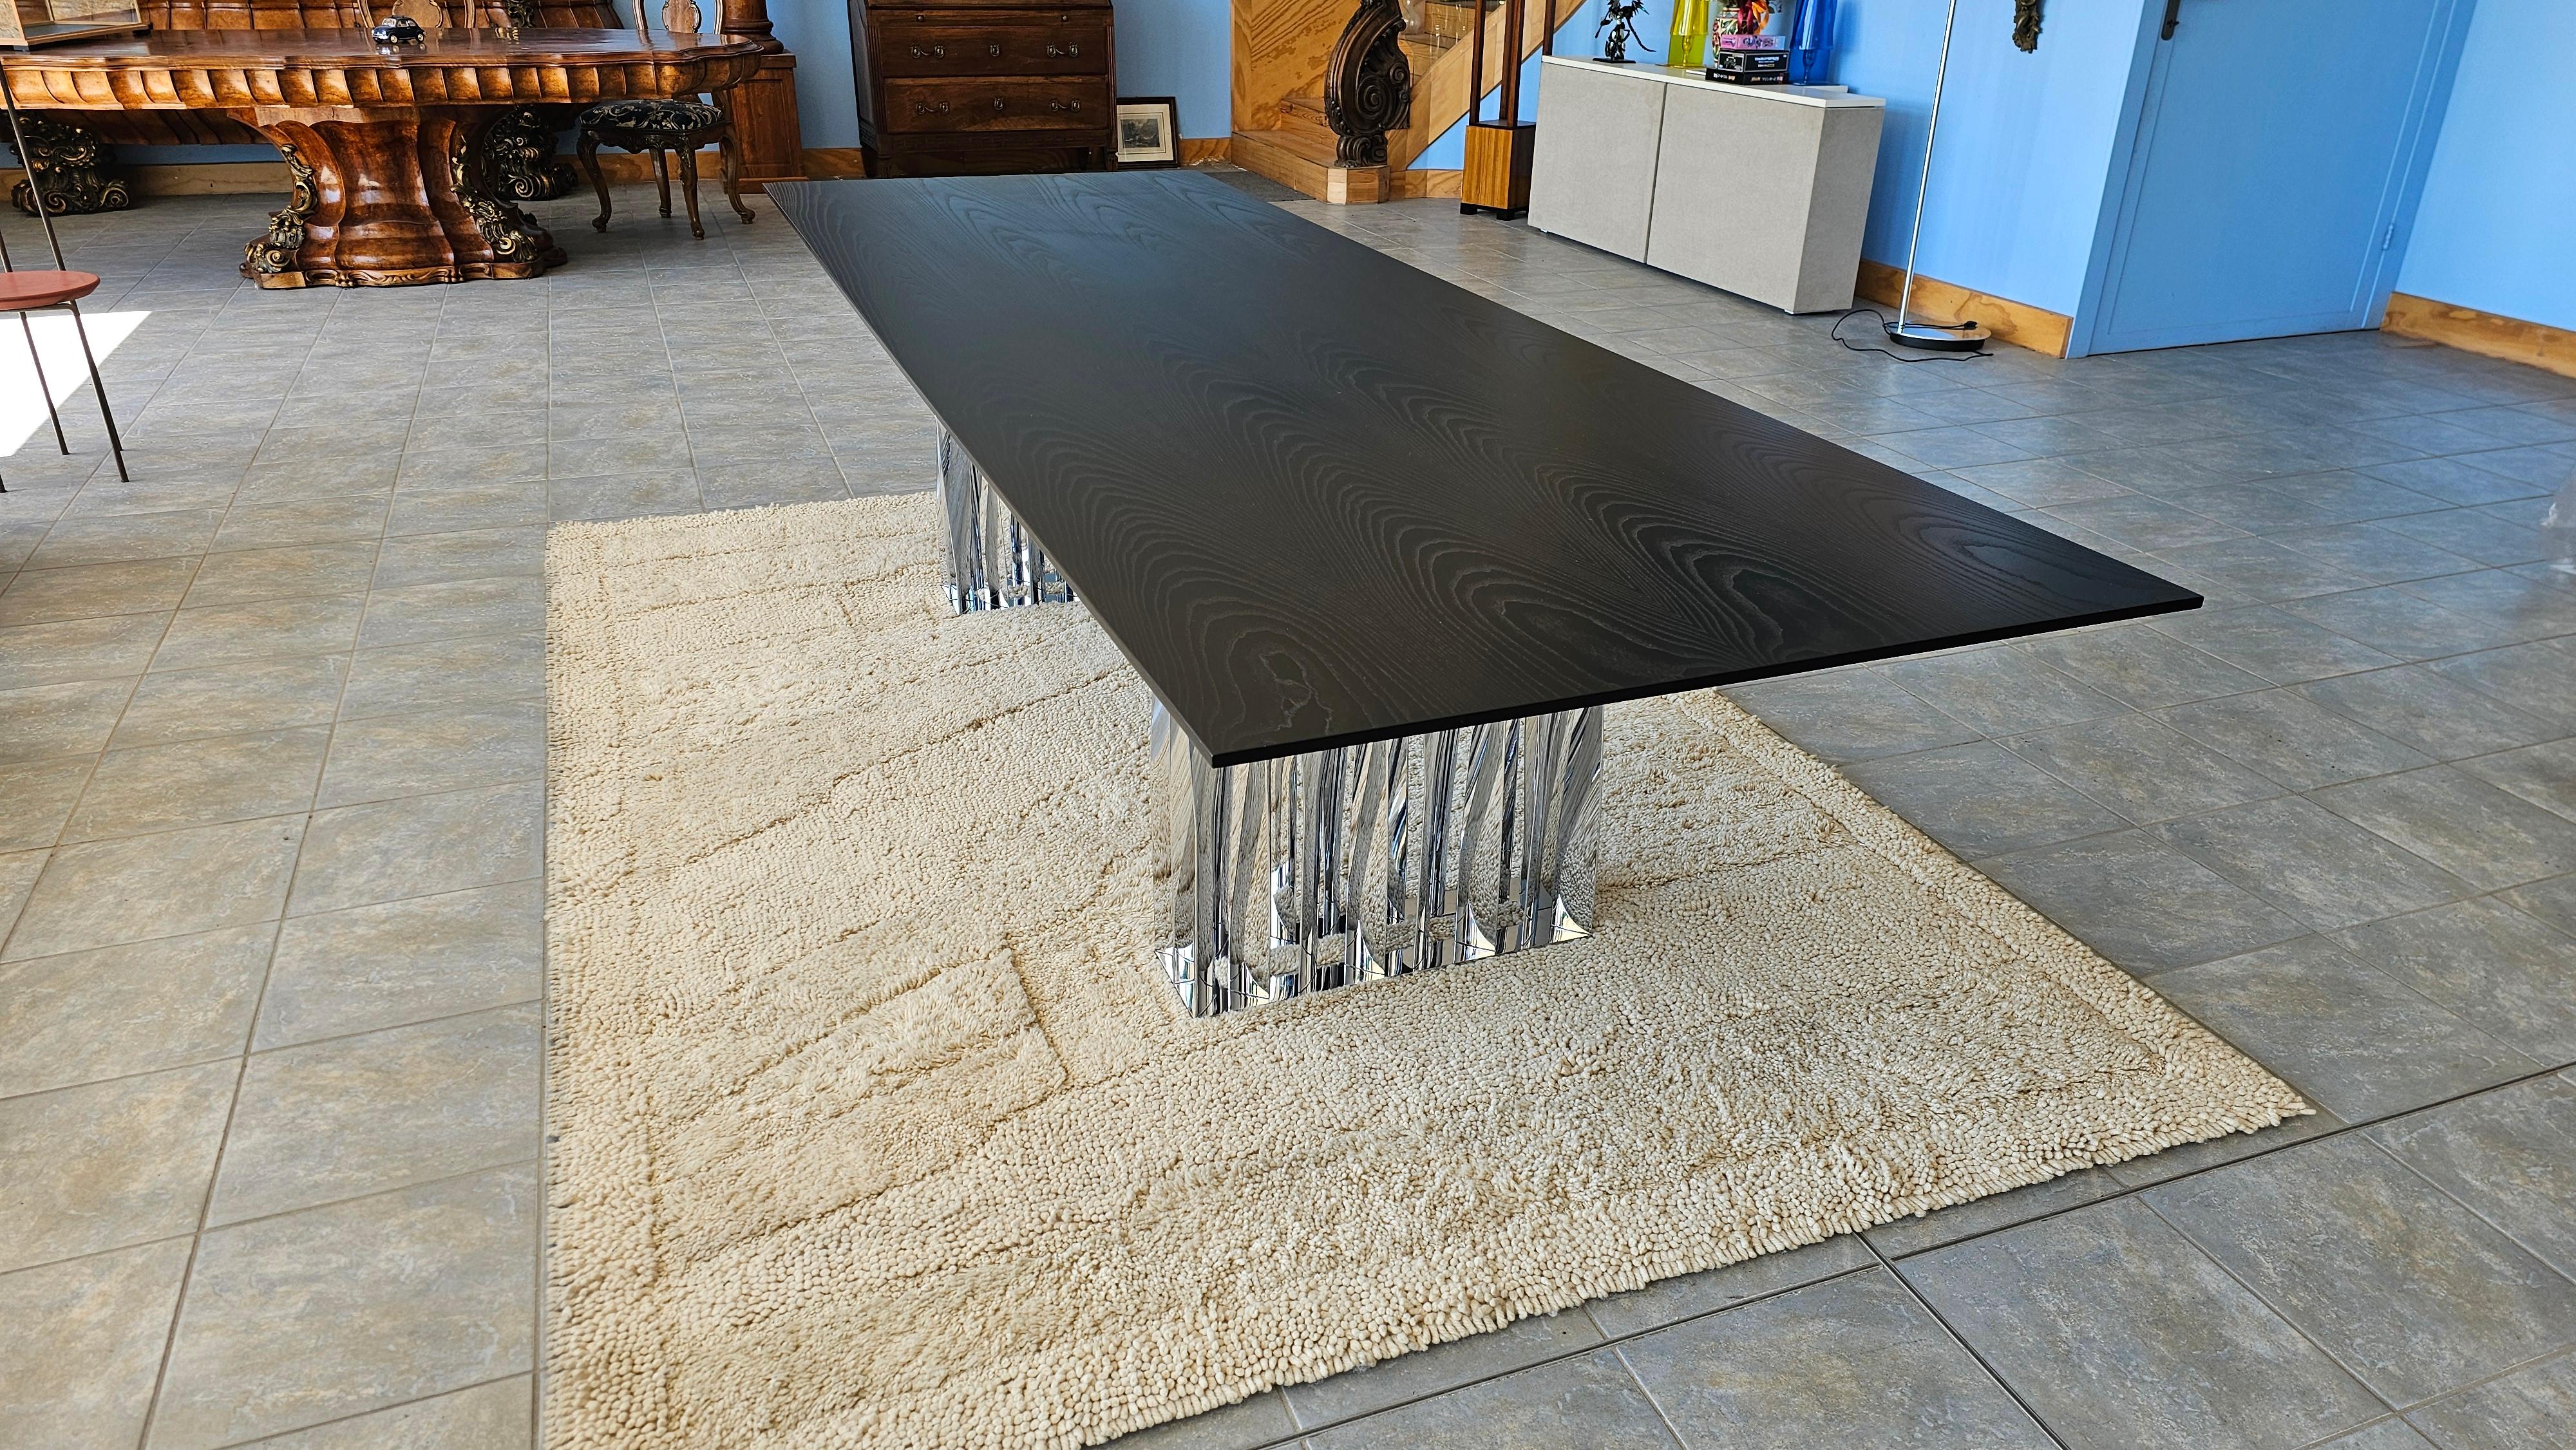 Voici la table Boboli, imaginée par le célèbre designer Rodolfo Dordoni. Incarnant des géométries inspirées de l'architecture, la structure de la table Boboli présente des lignes ordonnées, soutenues par des éléments hélicoïdaux qui rendent hommage